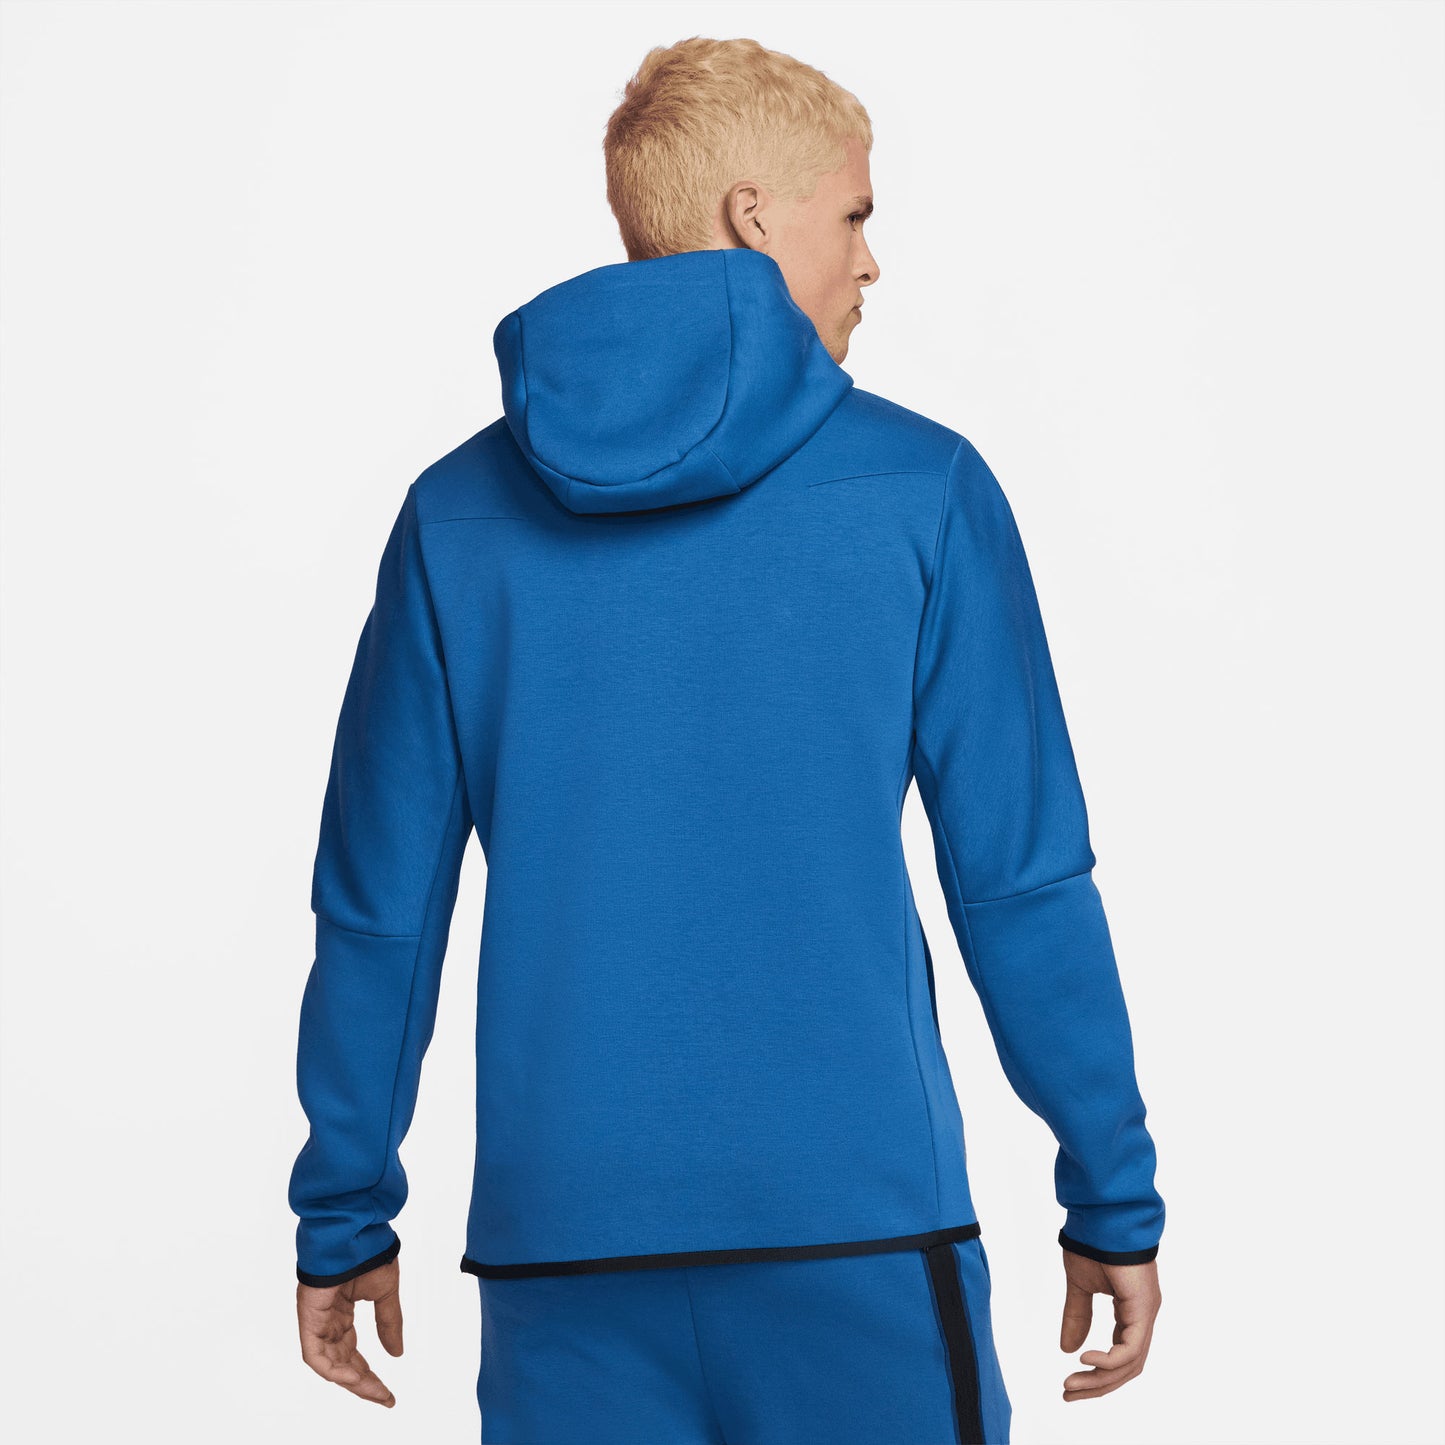 Nike Tech Fleece Men's Pullover Hoodie Blue (2)